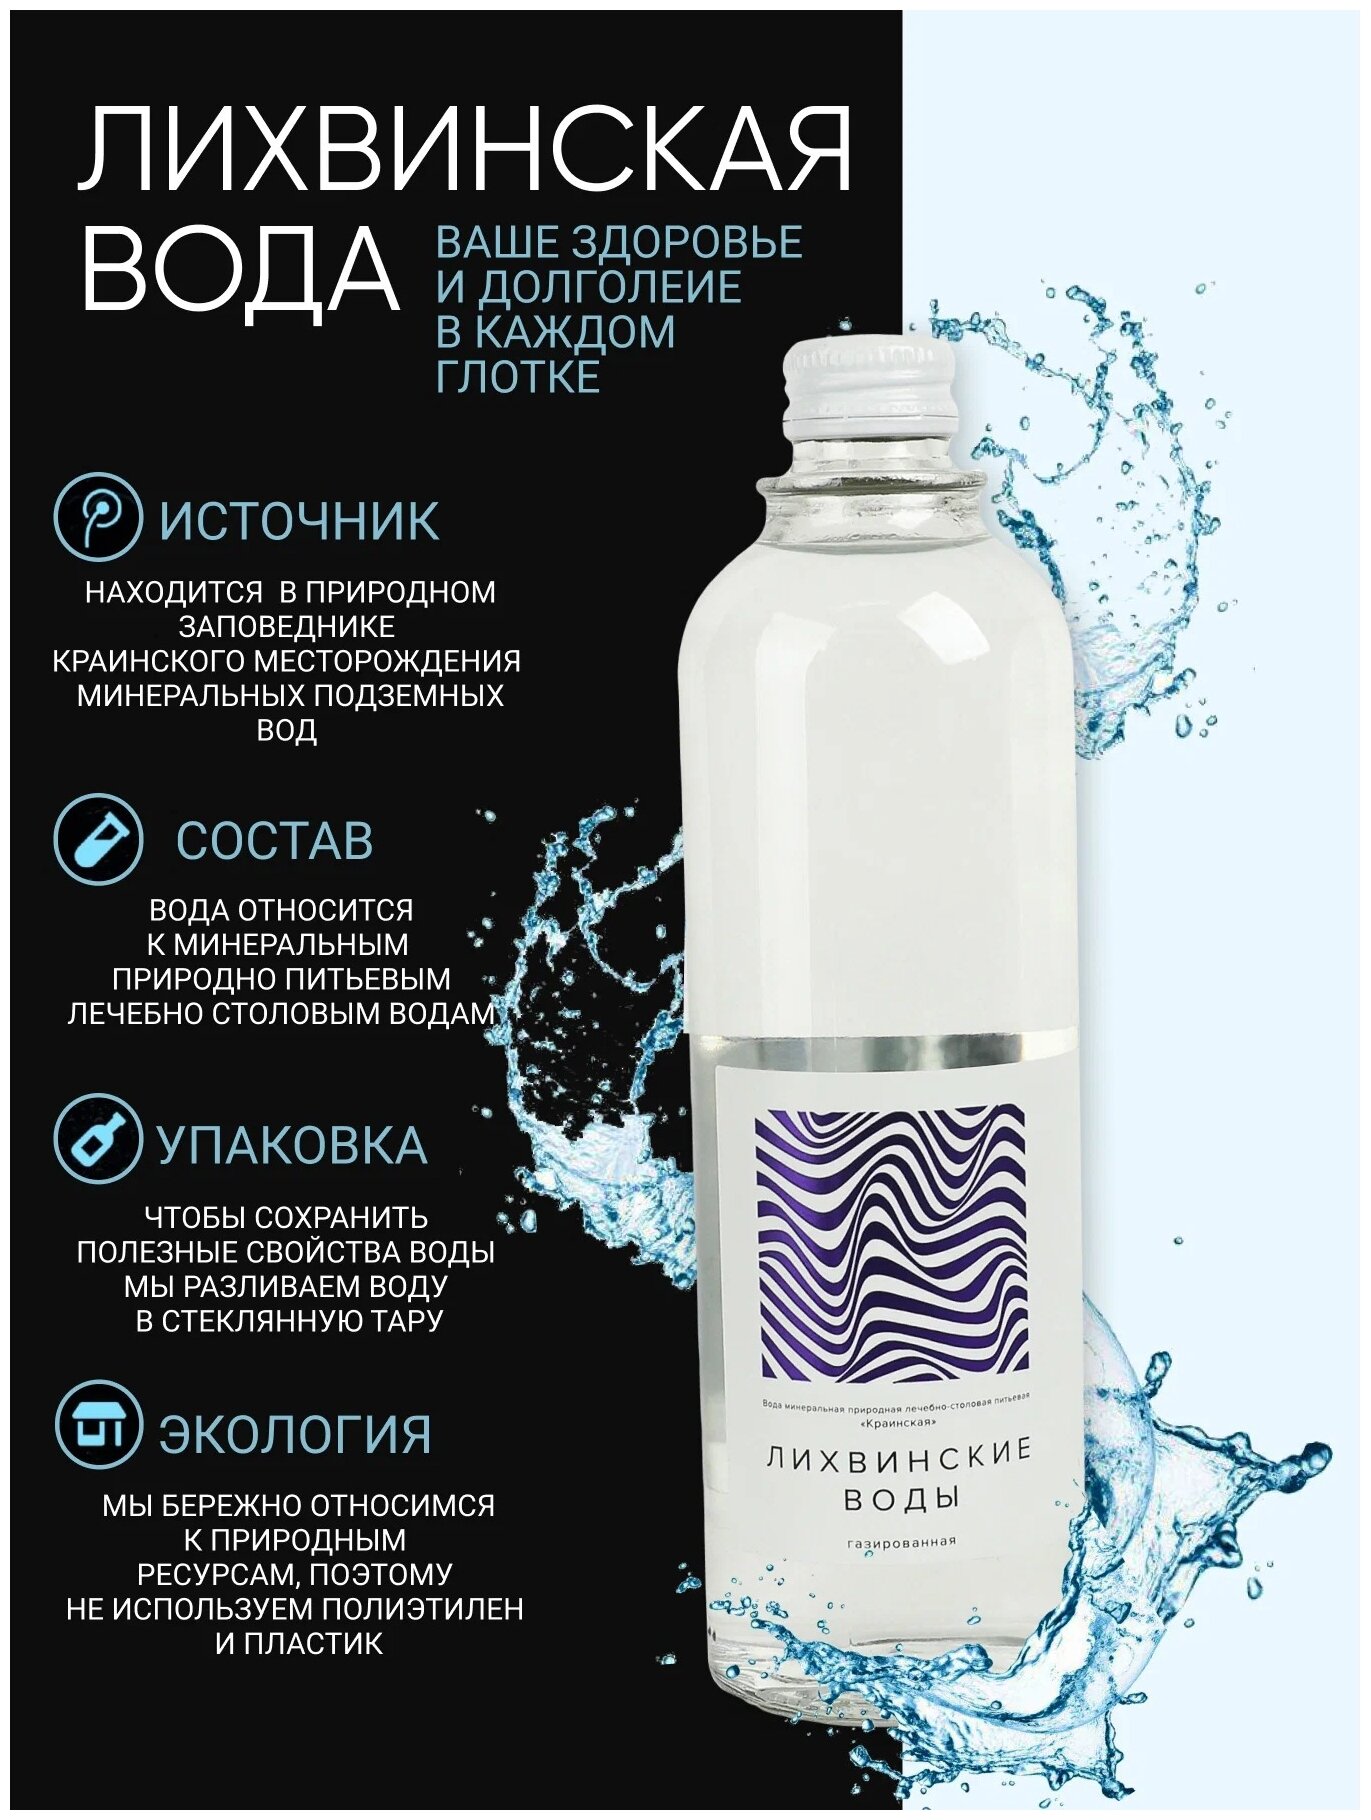 Минеральная вода "Лихвинские Воды" Premium класса, 20 бутылок по 0,5л - фотография № 3